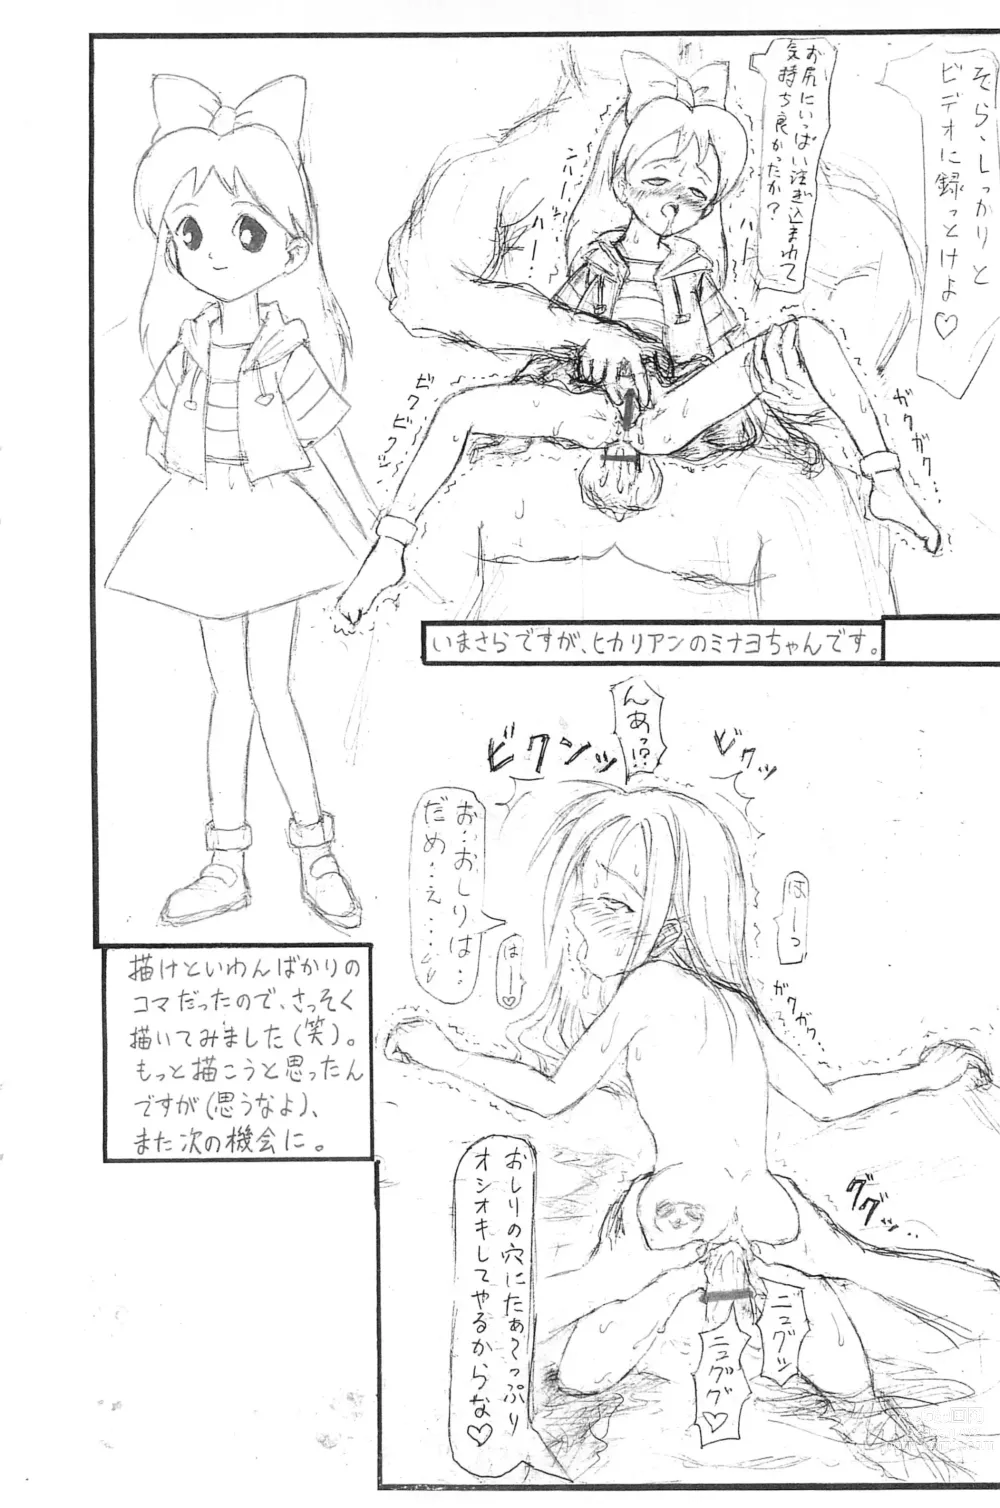 Page 6 of doujinshi Guchokuya Daiichigou